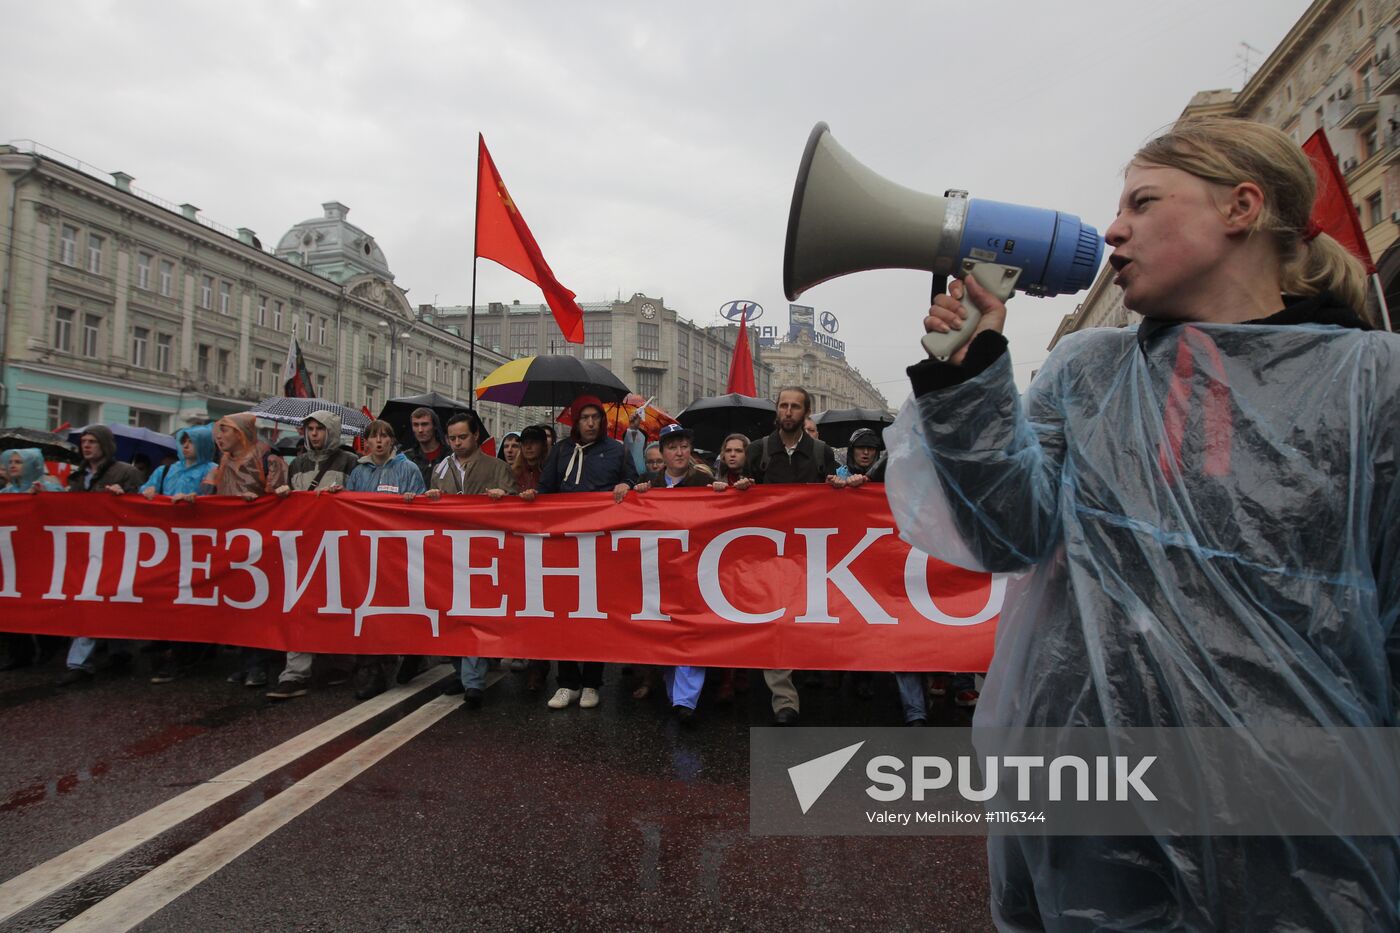 Opposition march along Tverskaya Street in Moscow